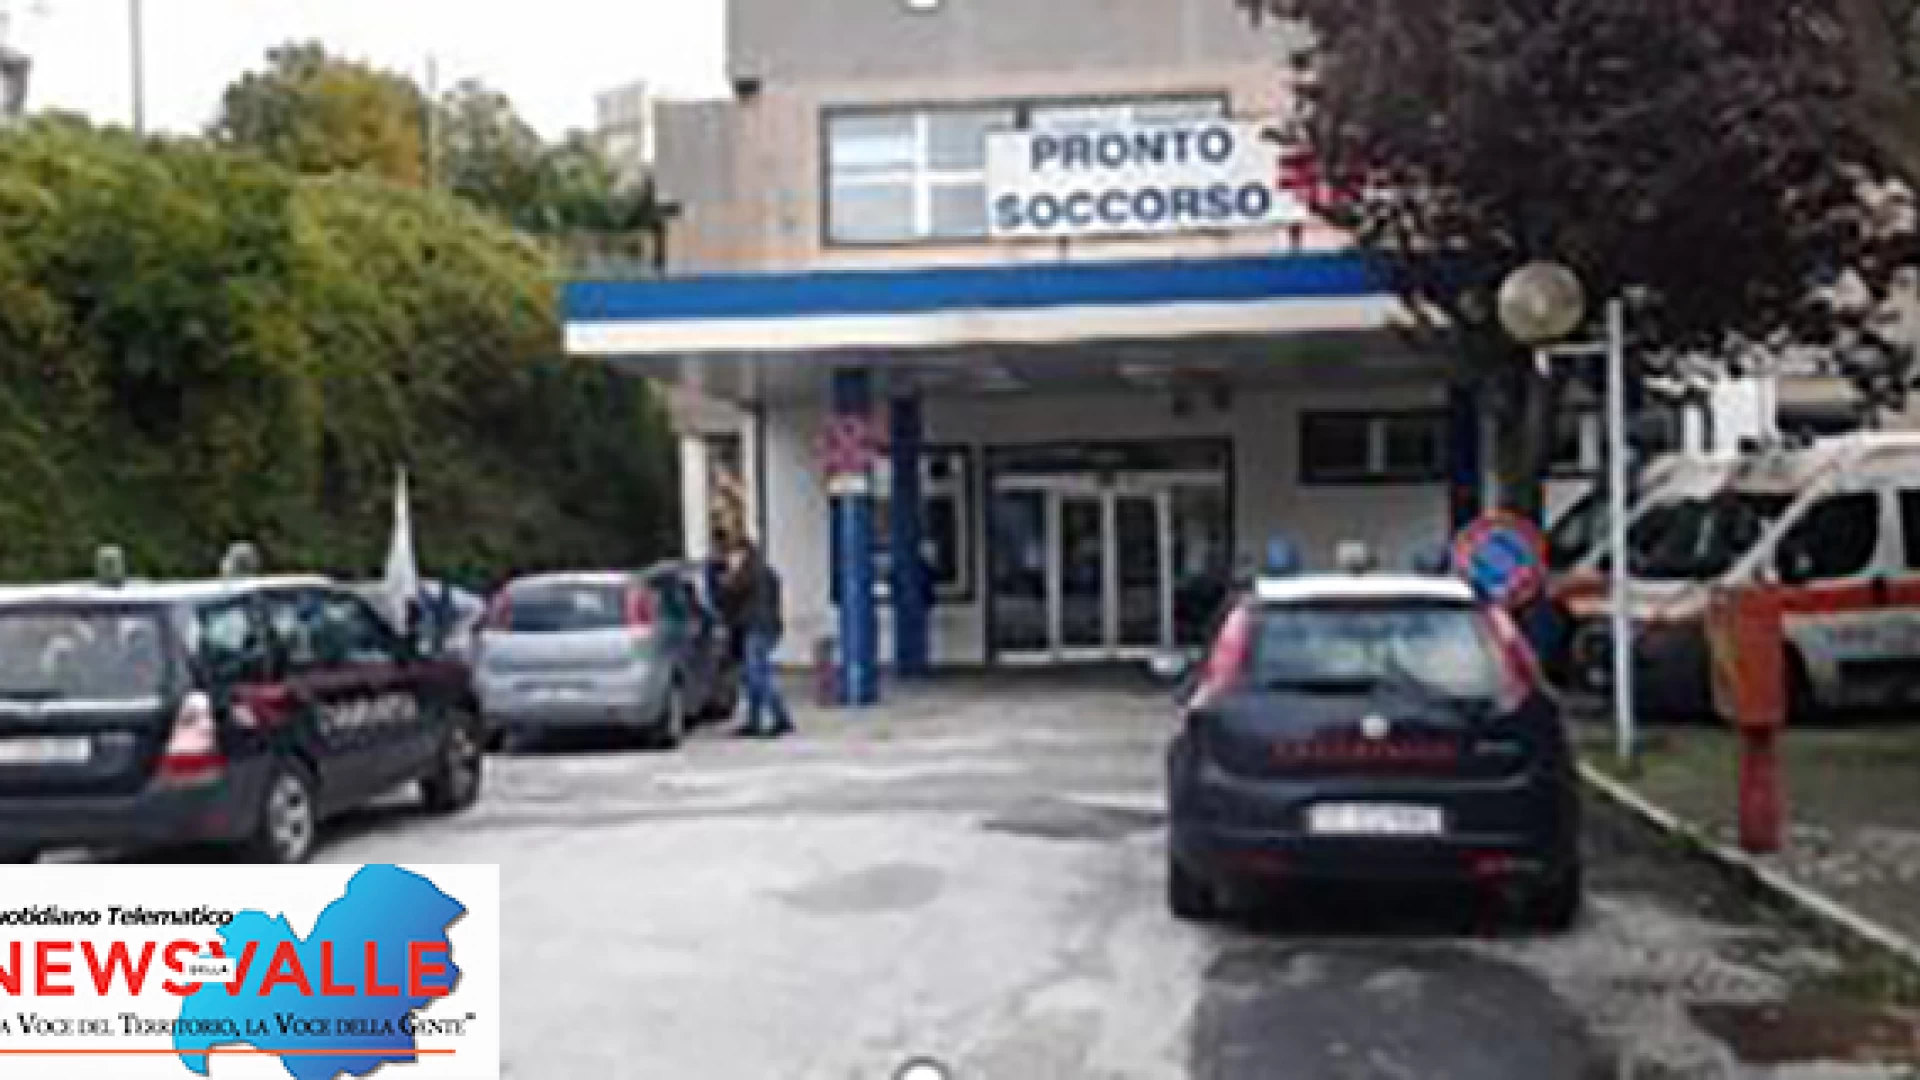 Colli a Volturno: diverbio verbale tra due cittadini. Intervengono i Carabinieri da Venafro.